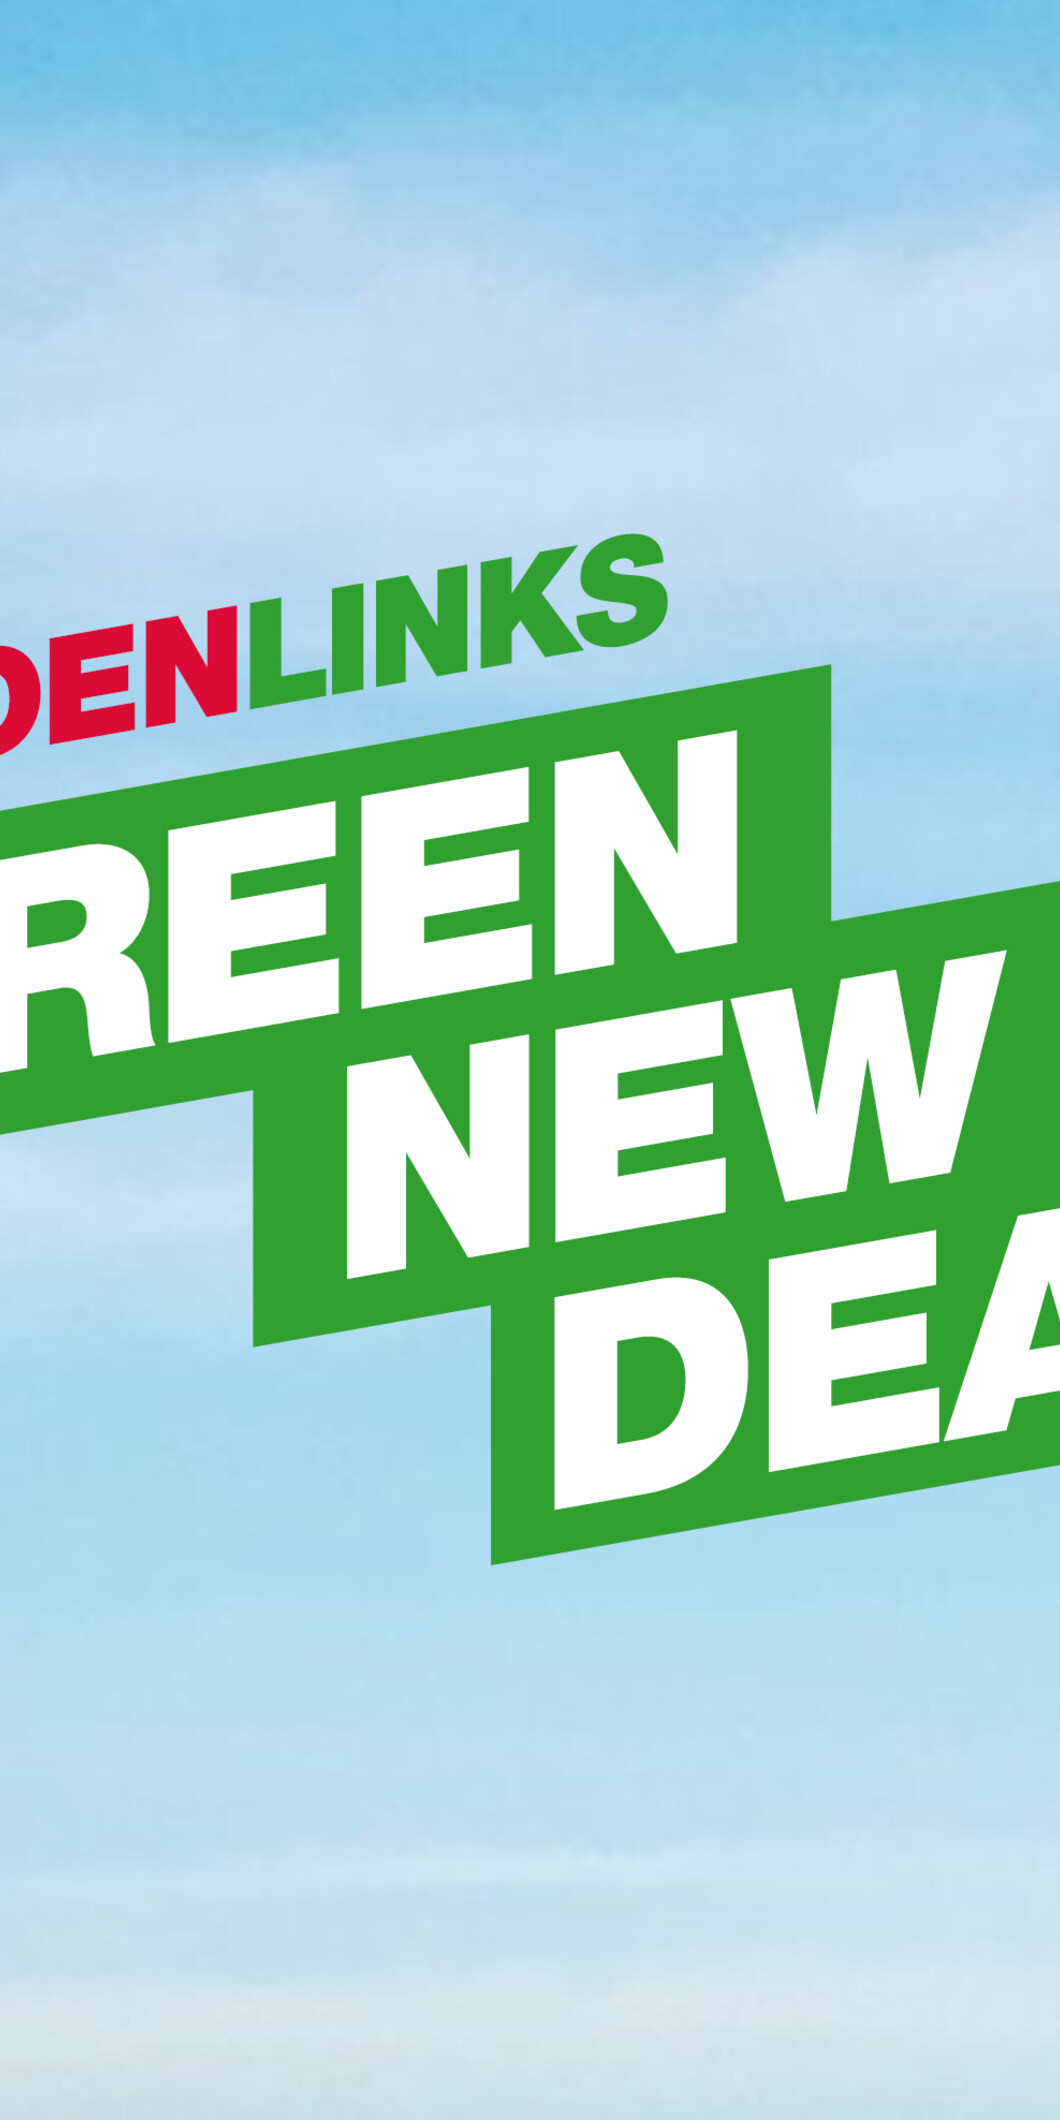 Green New Deal logo